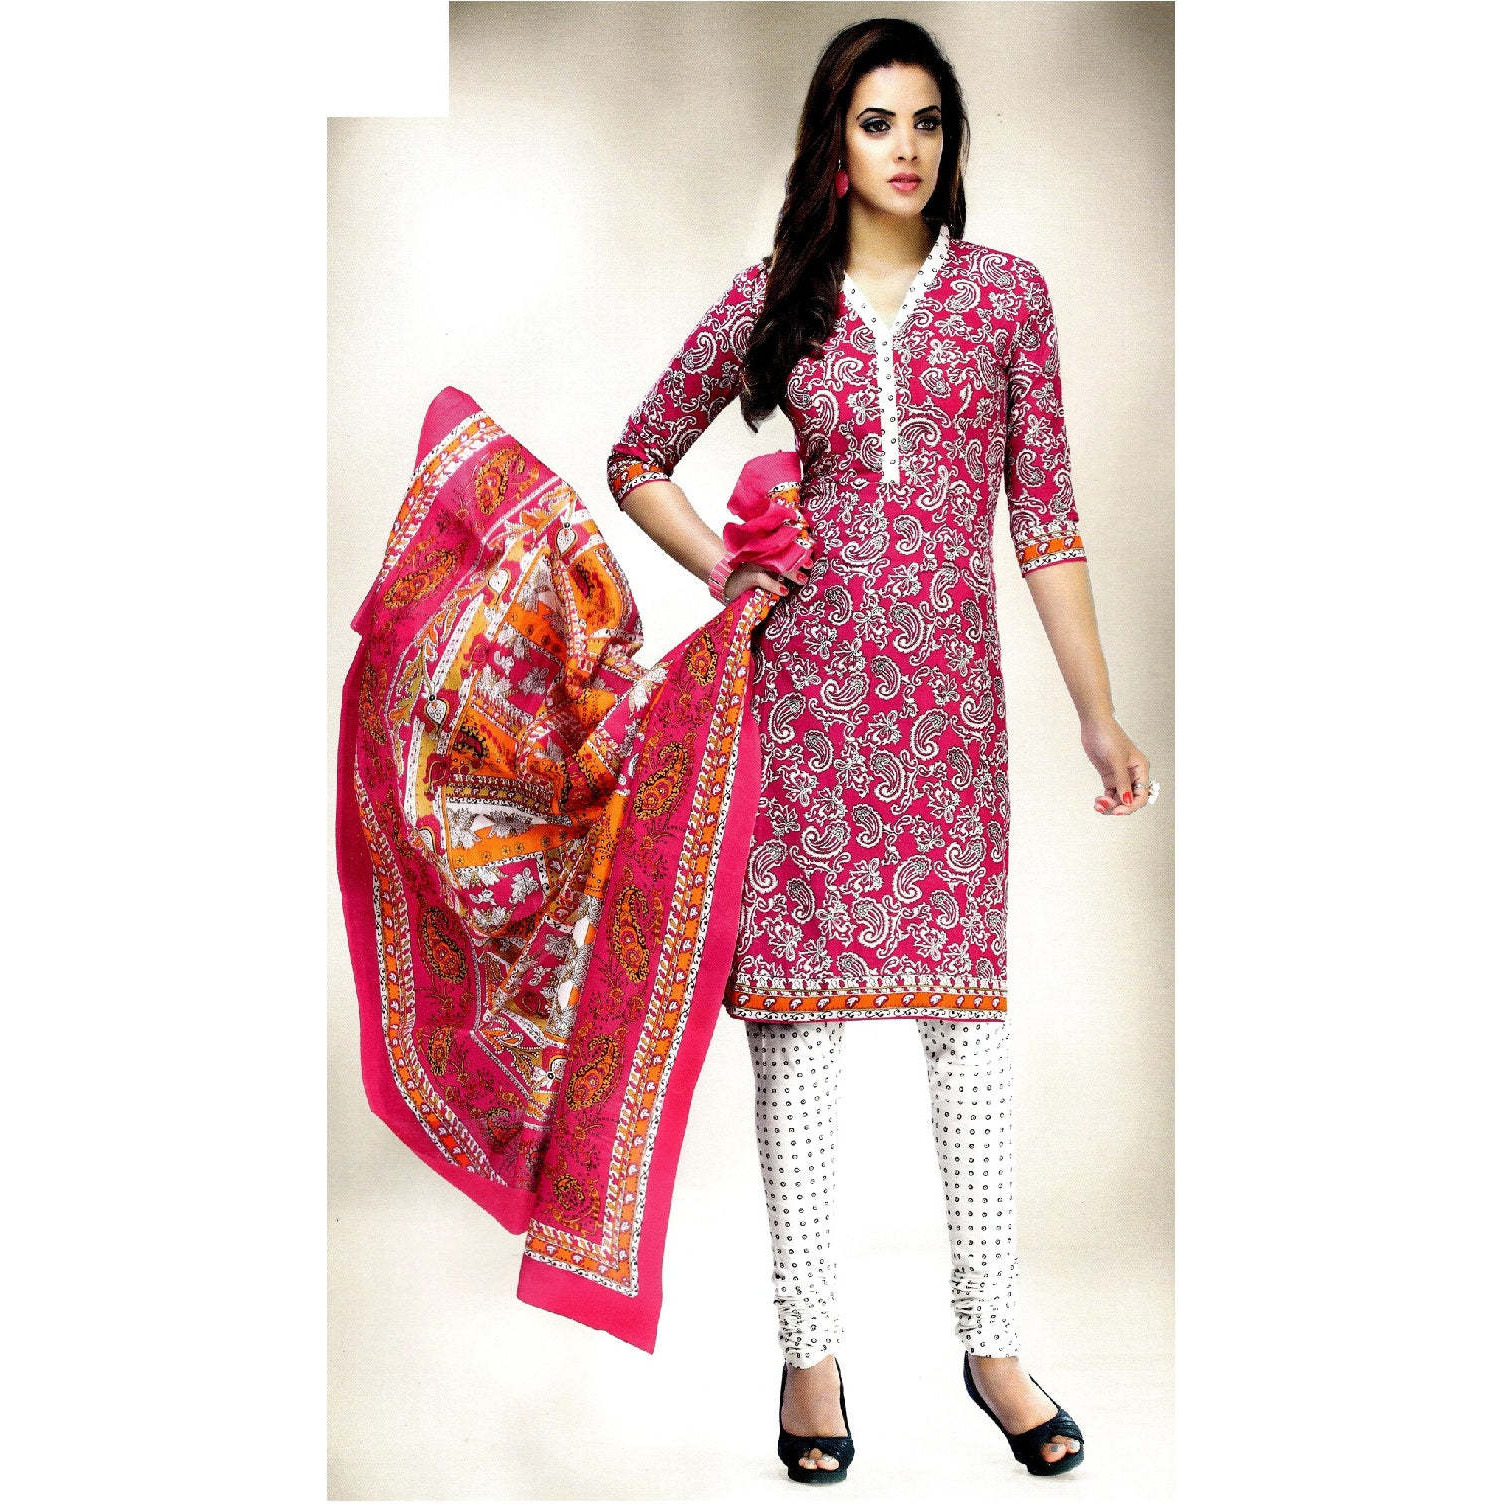 MAHATI Pink   cotton  Salwar suits (Size: L)